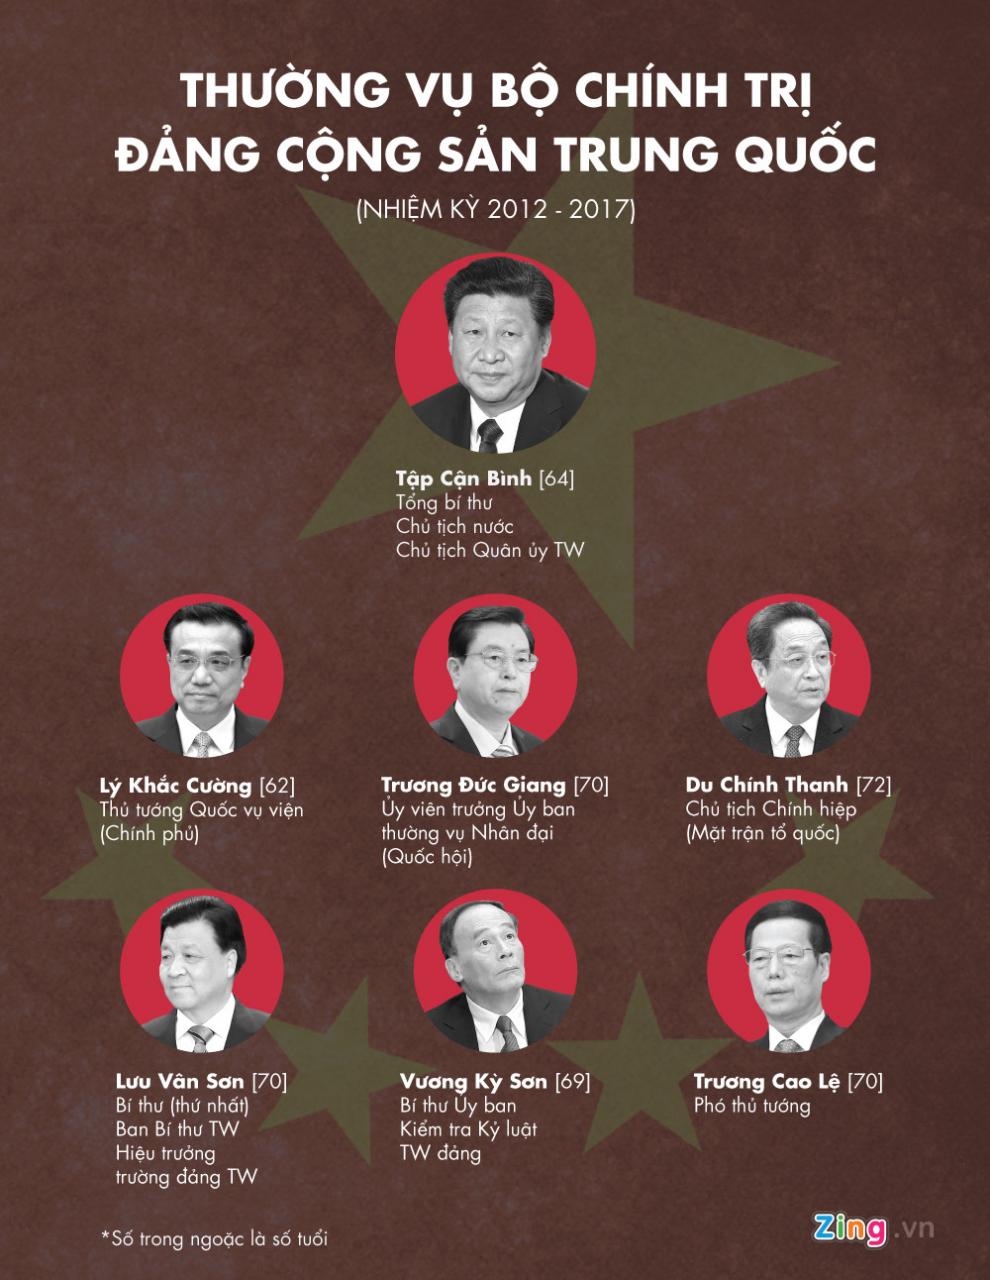 Thường vụ Bộ Chính trị - cơ quan quyền lực cao nhất ở Trung Quốc